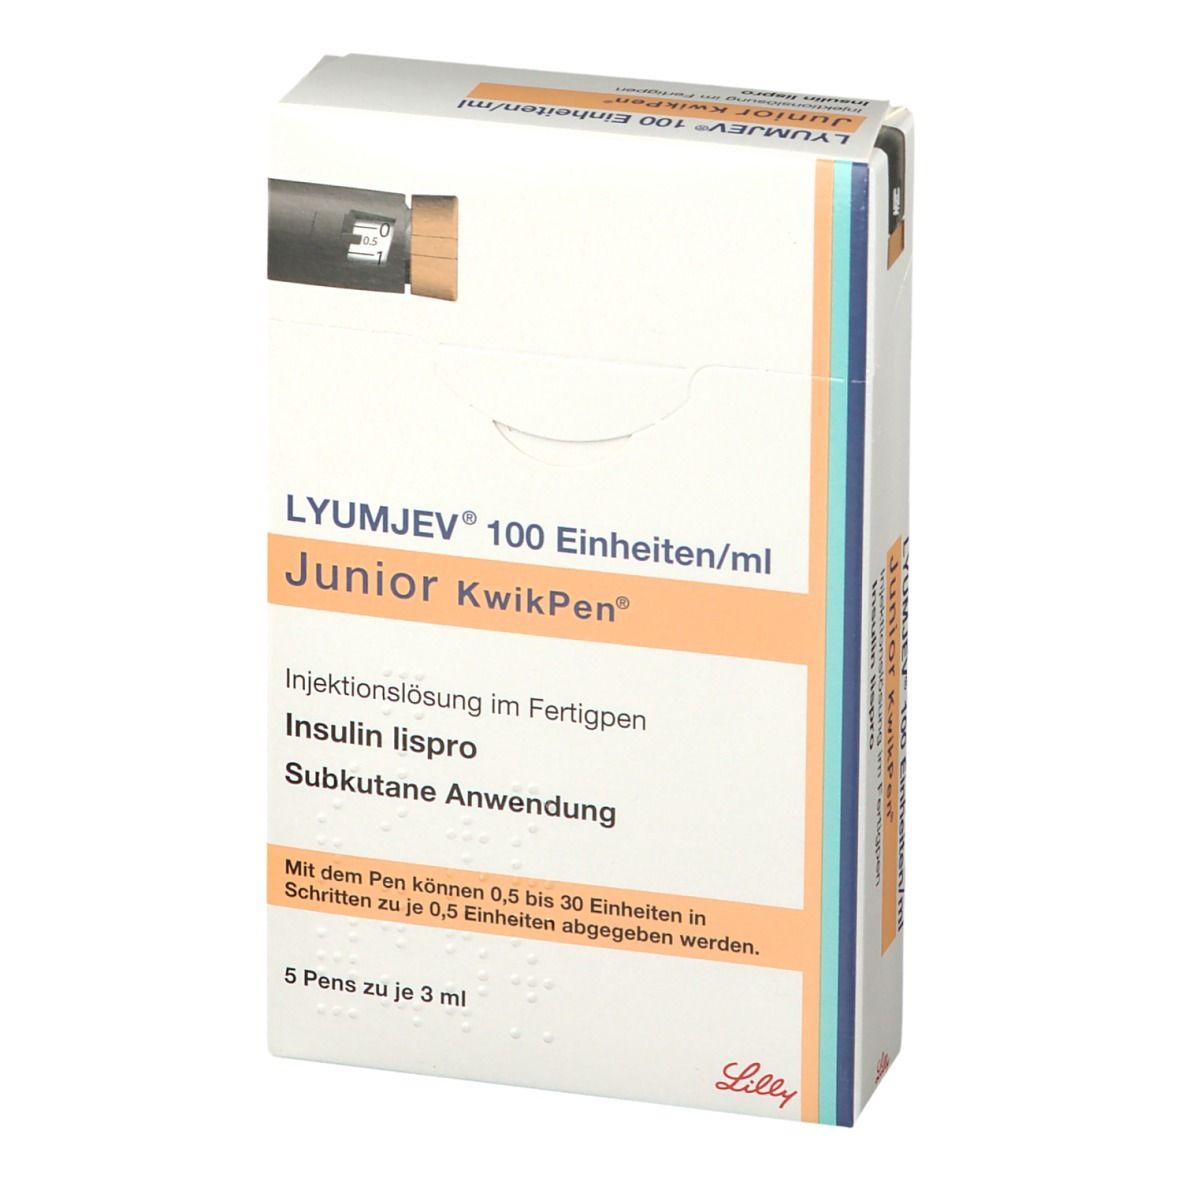 LYUMJEV® 100 Einheiten/ml Junior KwikPen™